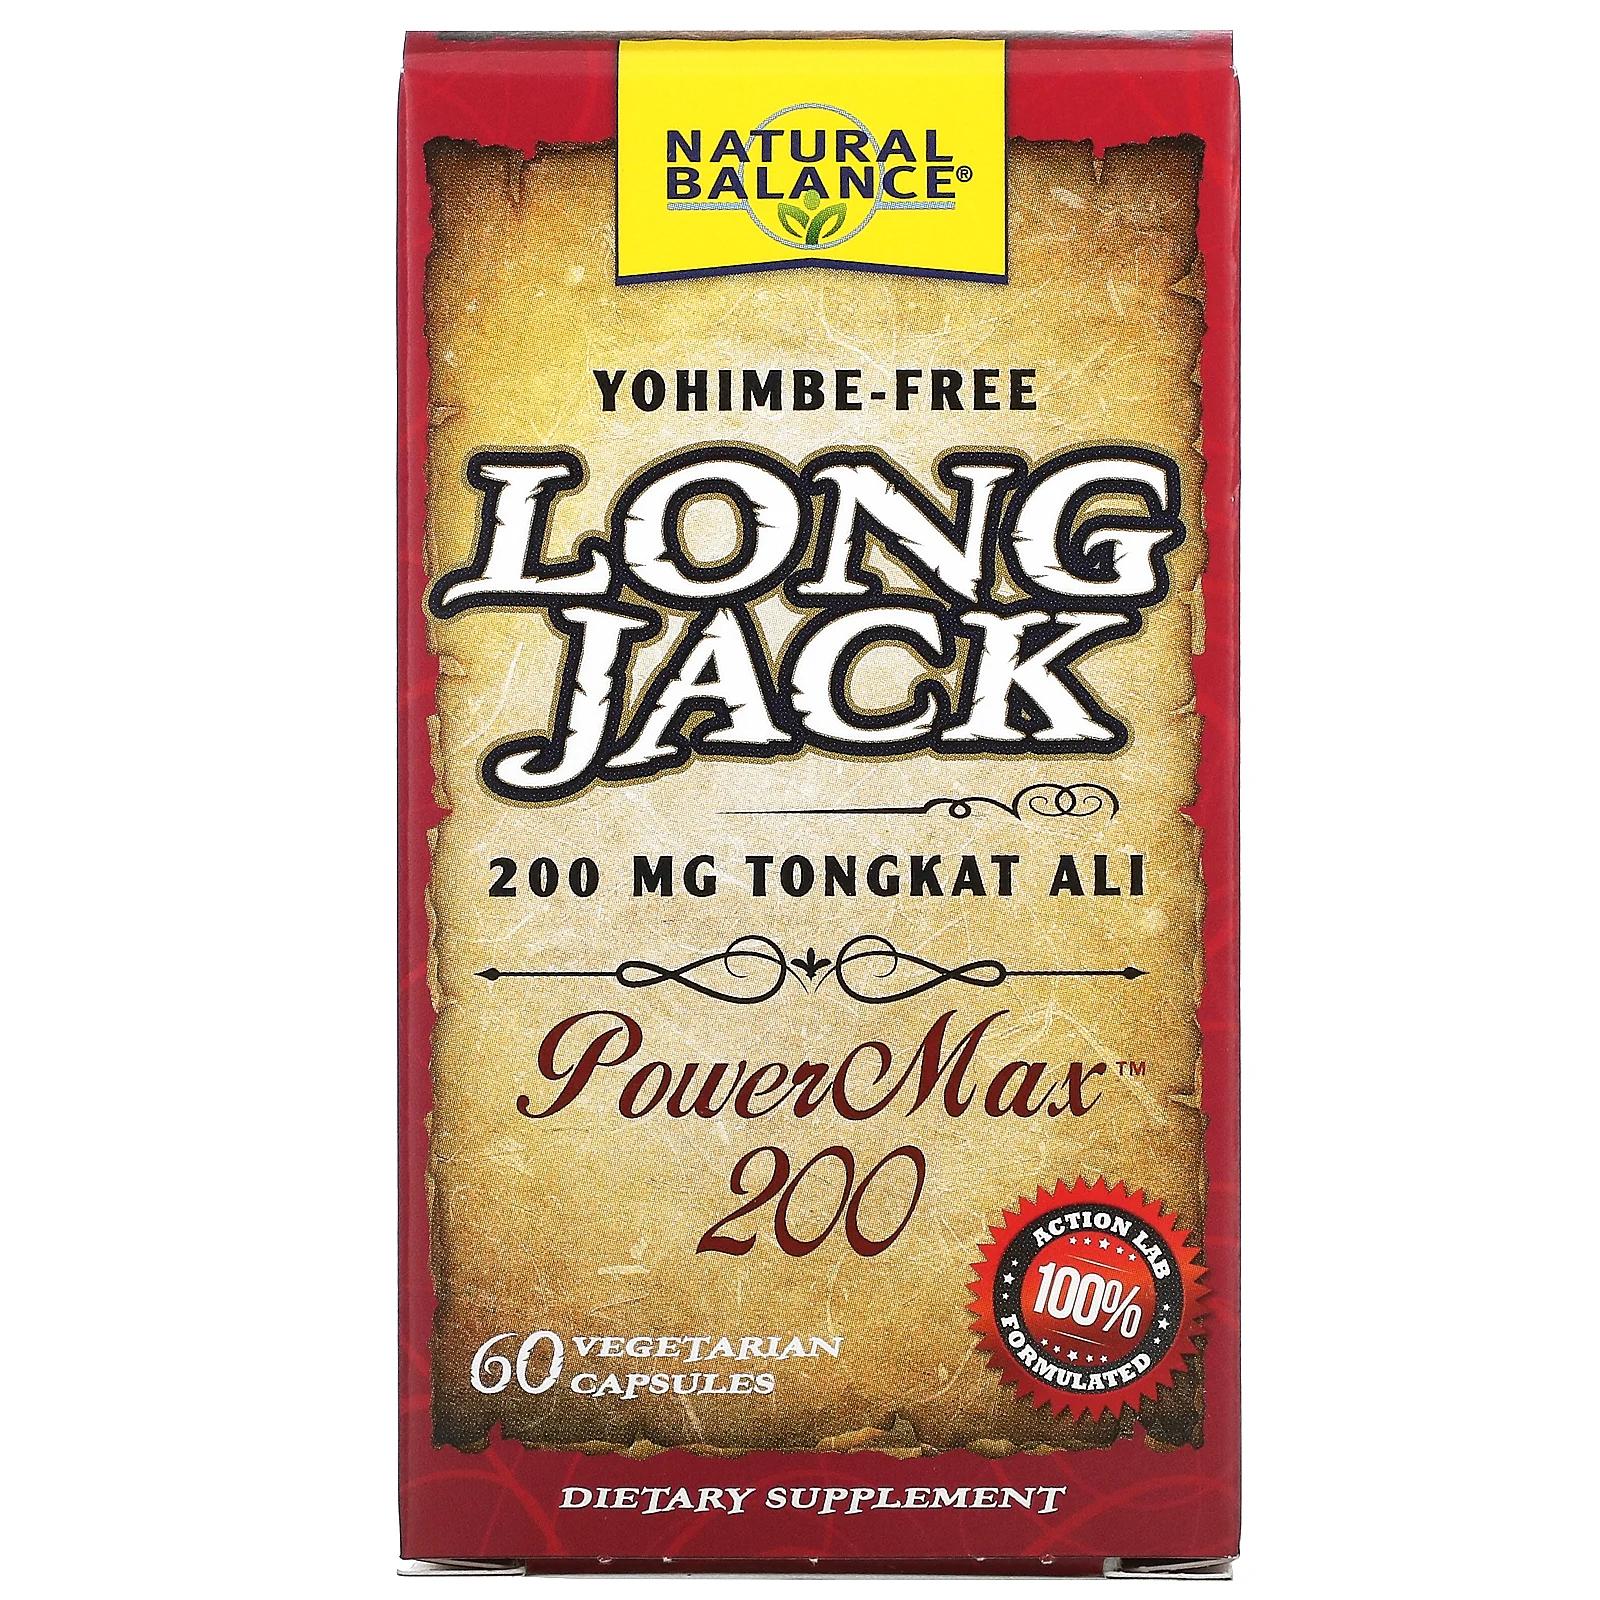 Natural Balance Long Jack PowerMax 200 60 вегетерианских капсул natural balance long jack powermax 200 60 вегетерианских капсул